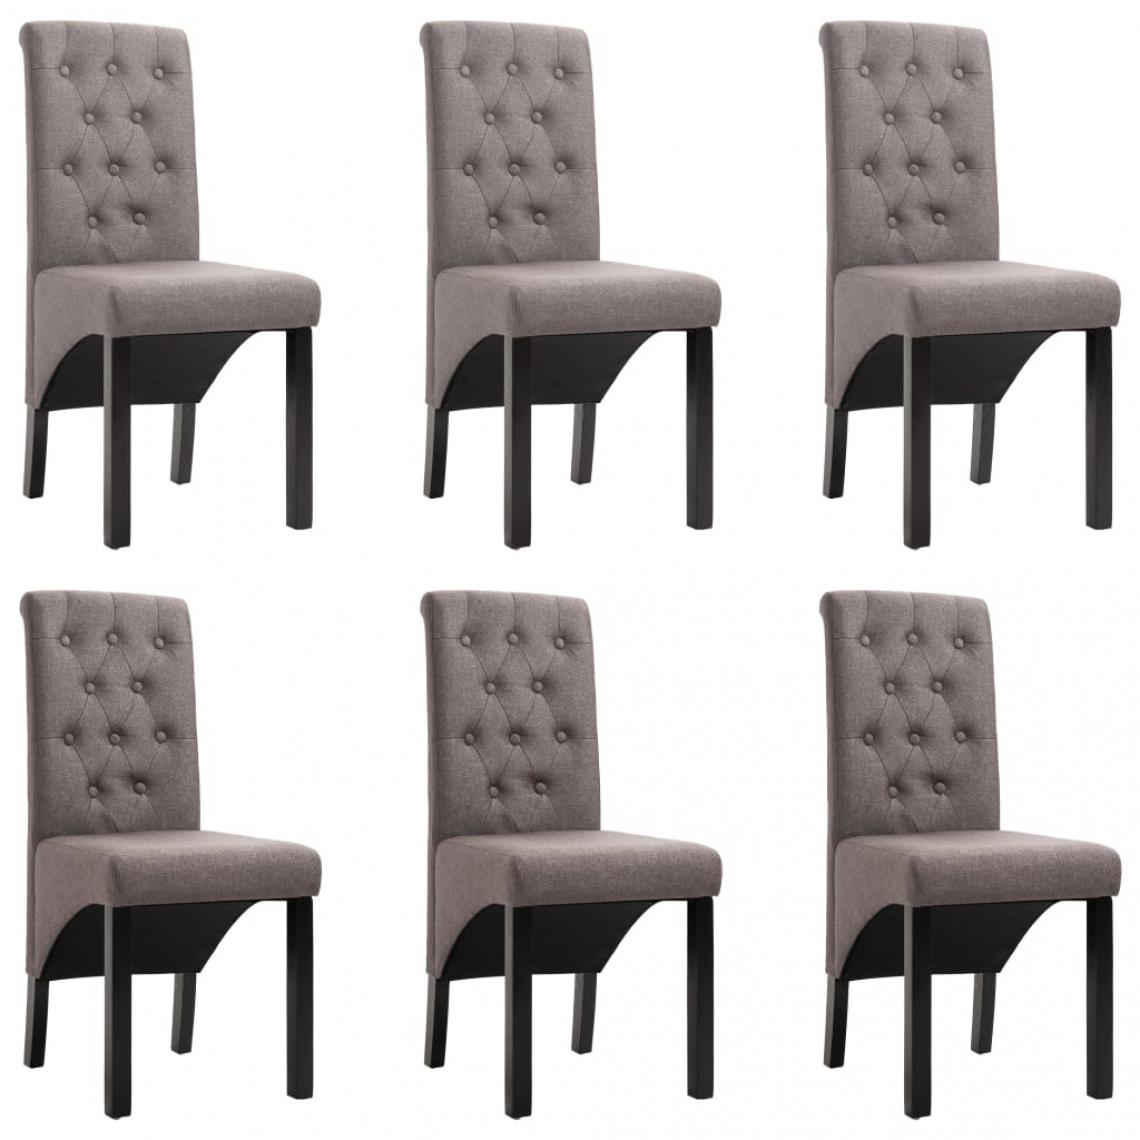 Decoshop26 - Lot de 6 chaises de salle à manger cuisine design classique tissu taupe CDS022855 - Chaises